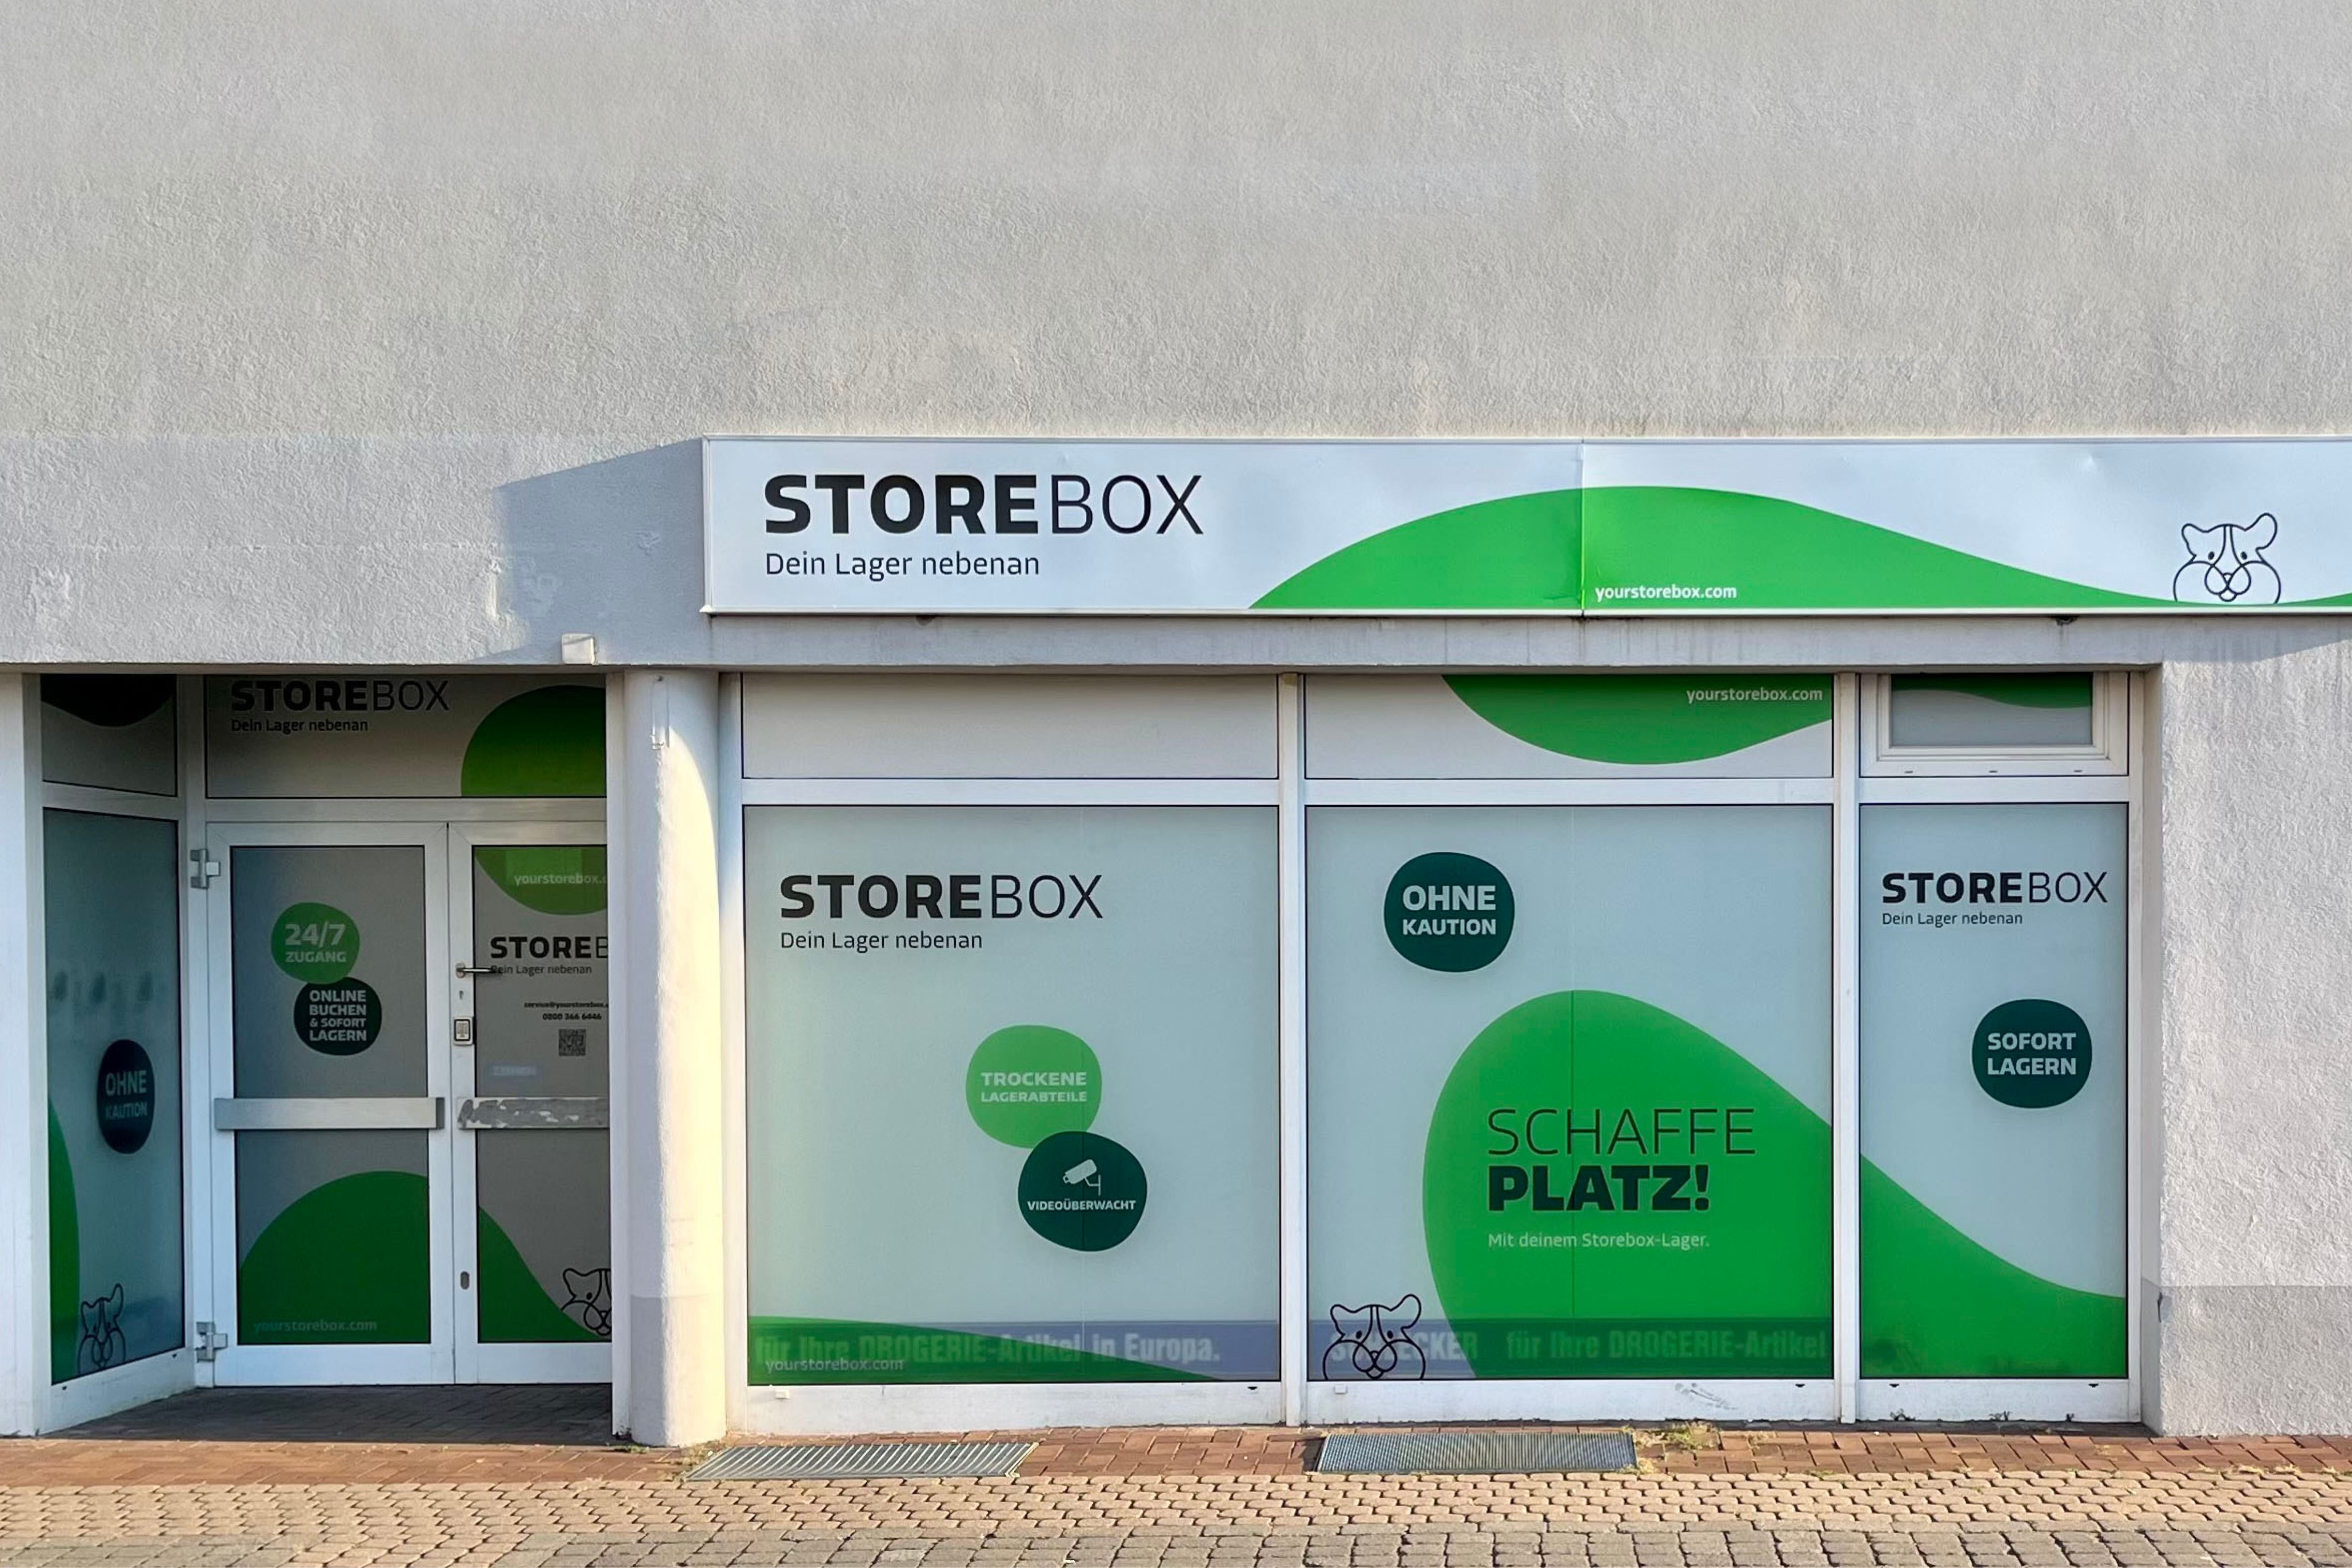 Storebox - Dein Lager nebenan, Kanalstraße 4 in Oranienburg